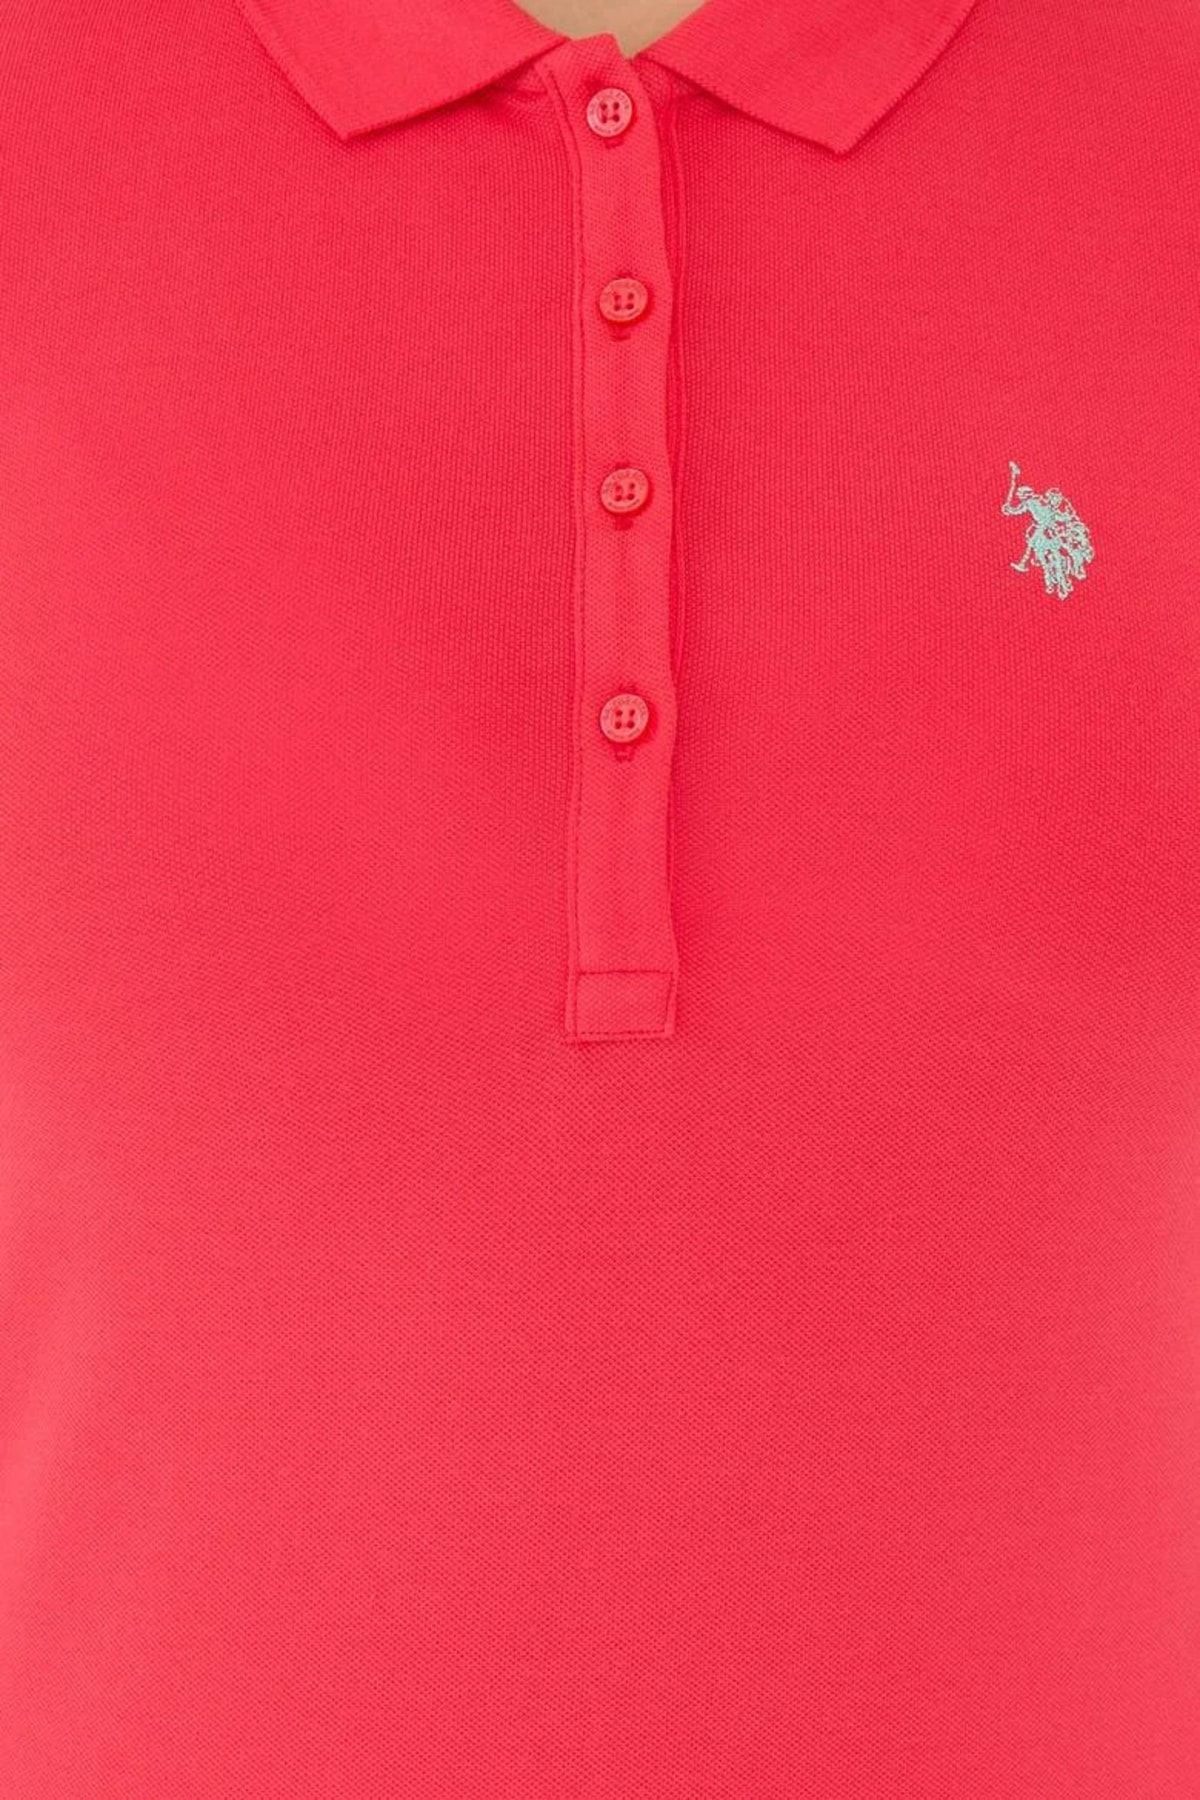 U.S. Polo Assn. تیشرت یقه پولو قرمز زنانه